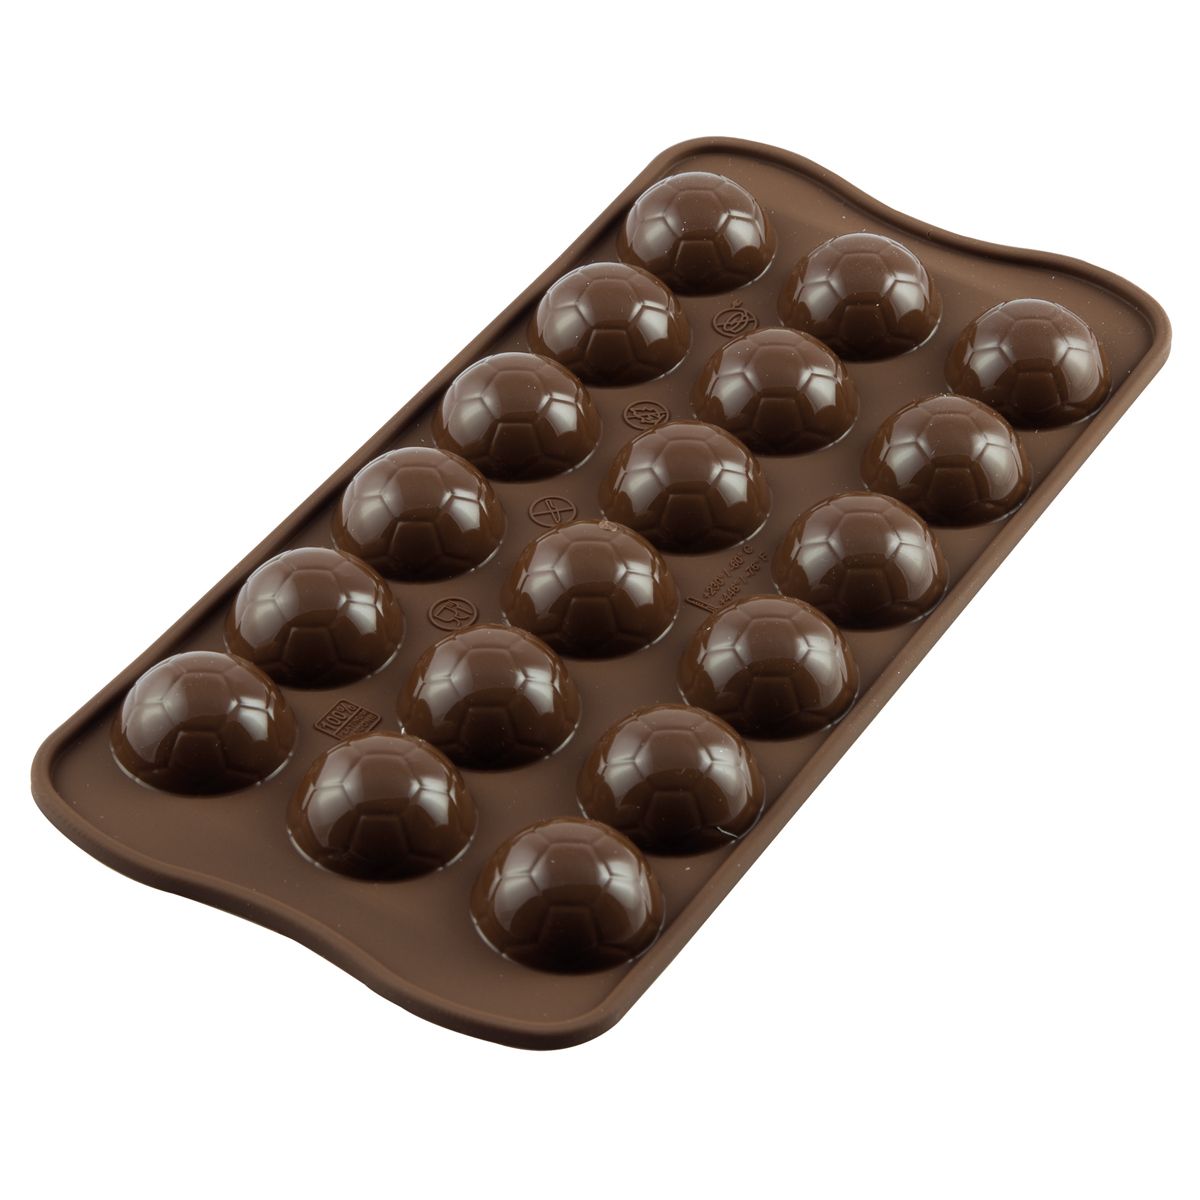 Silikónová forma na čokoládu - CHOCOGOAL 18ks, Silikomart, SCG34